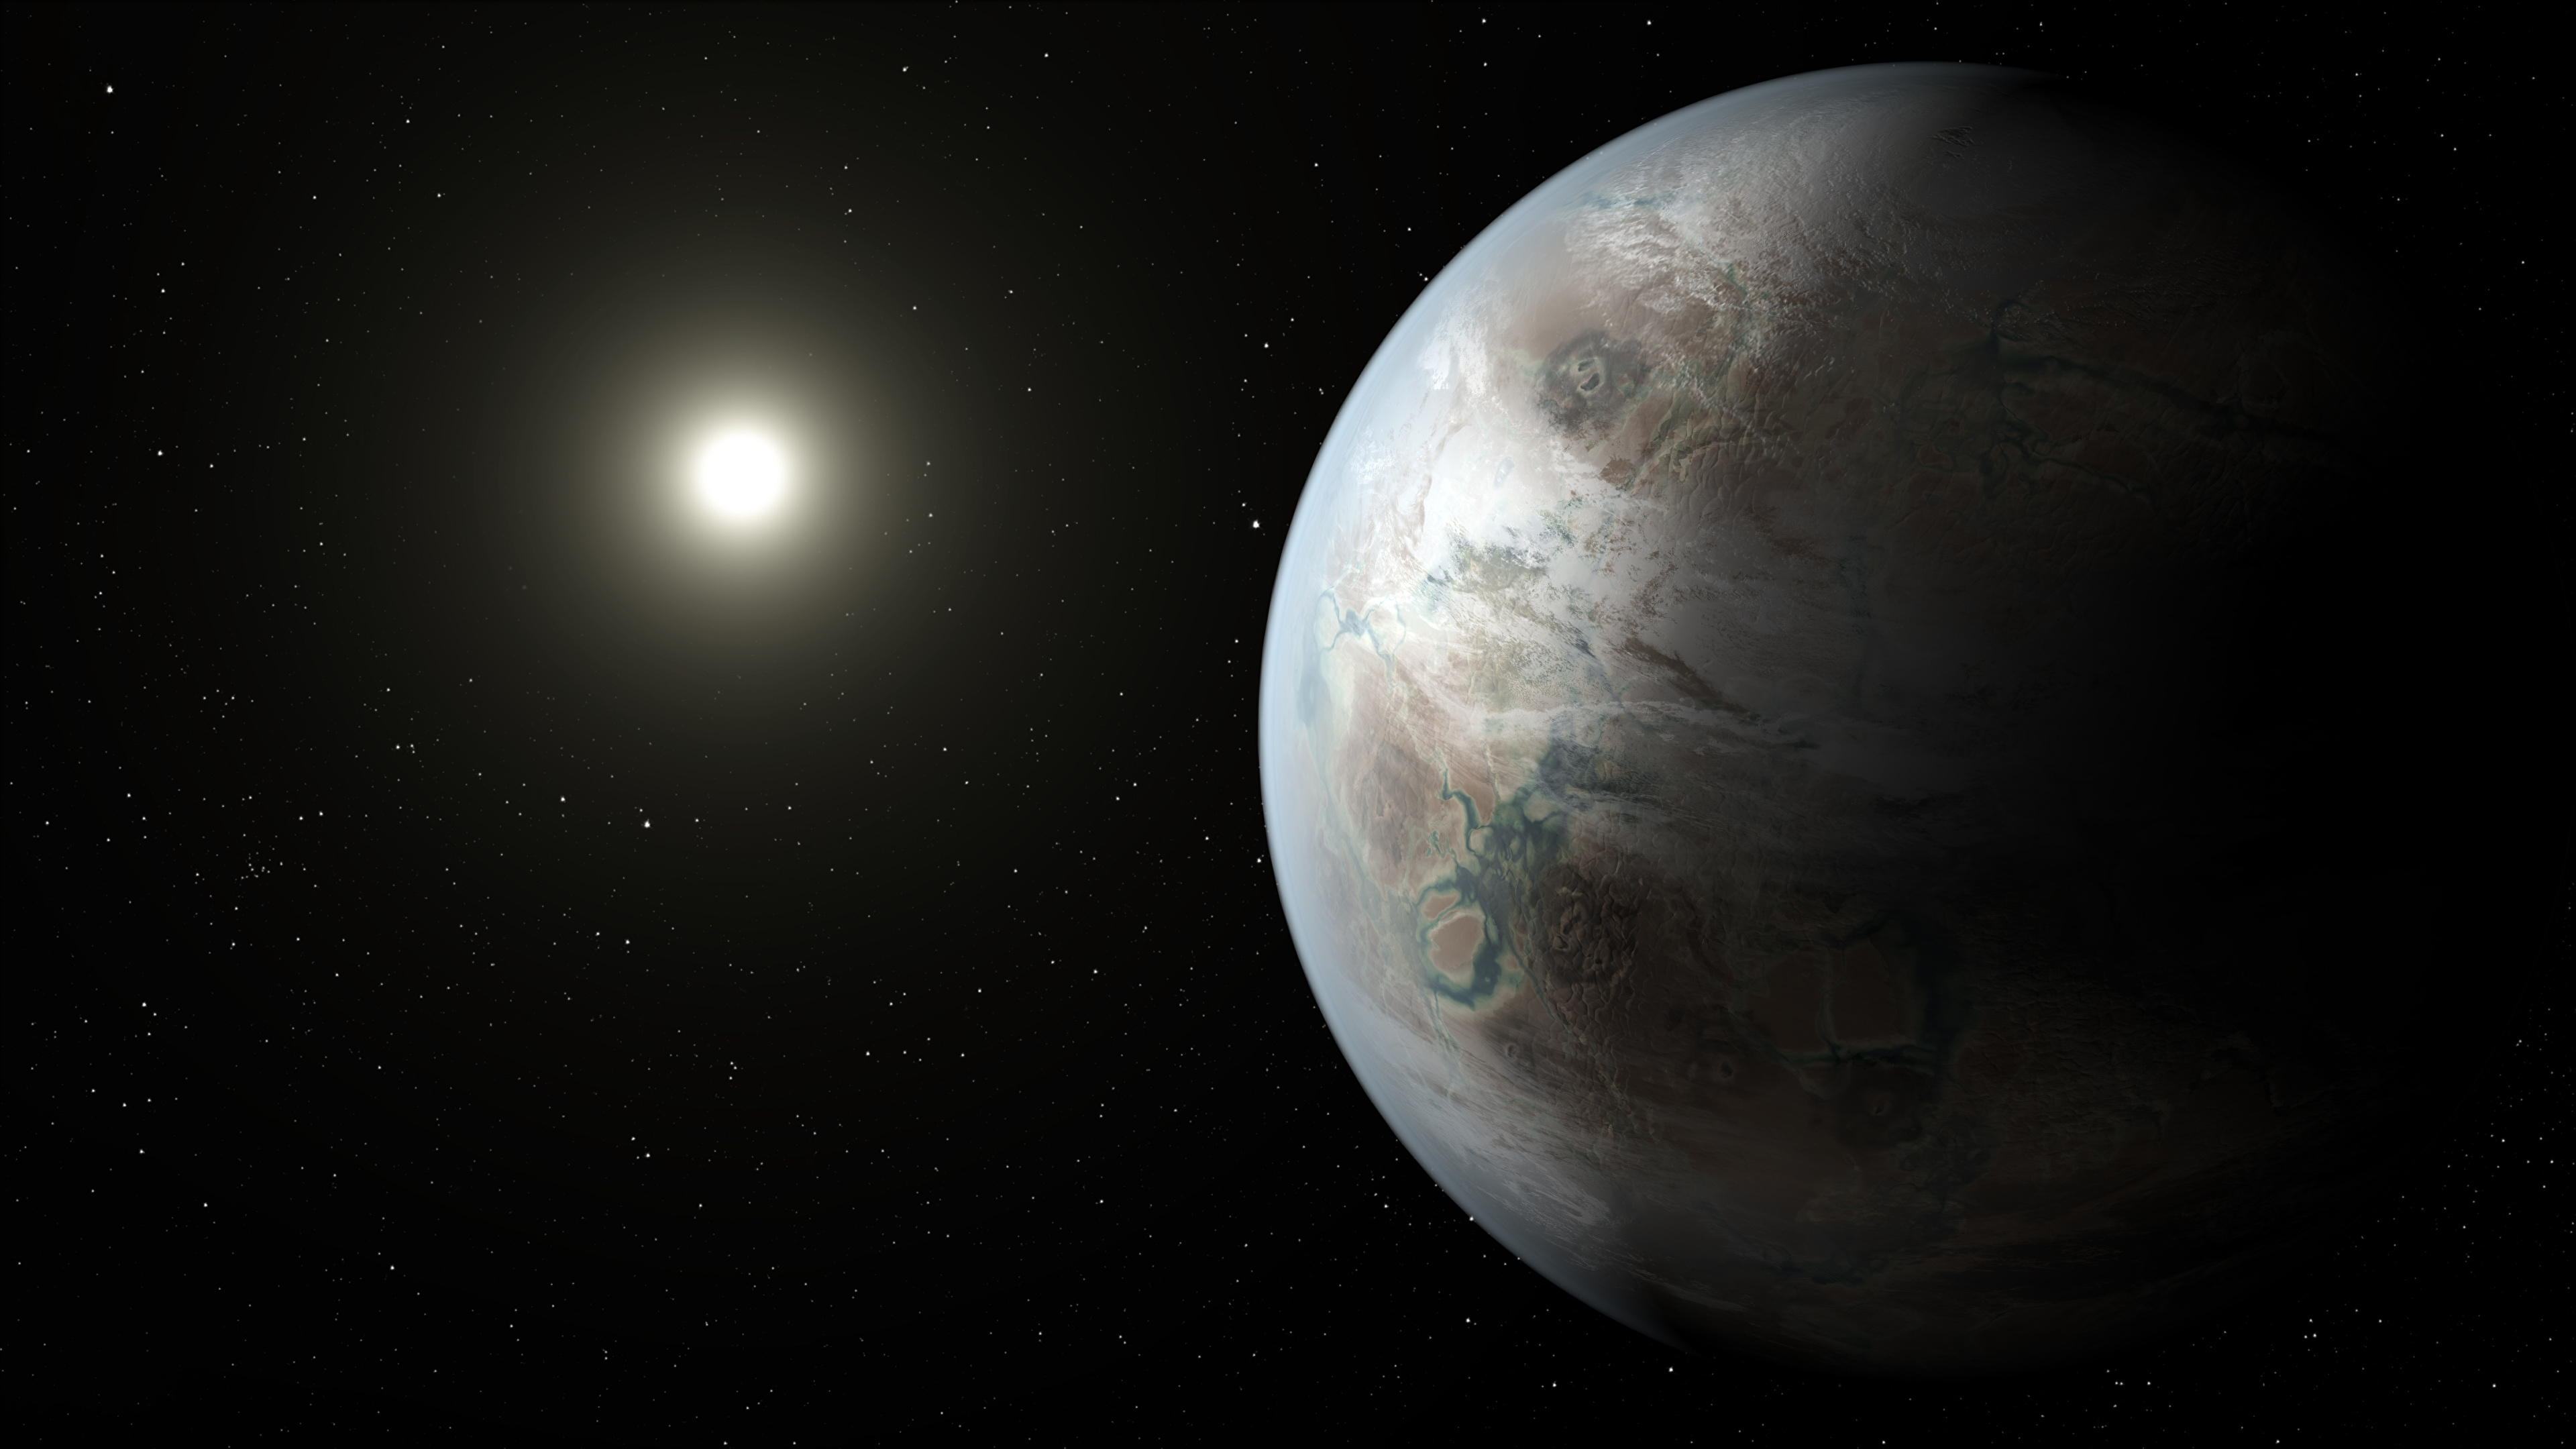 壁紙 3840x2160 惑星 Kepler 452b Nasa 宇宙空間 3dグラフィックス ダウンロード 写真